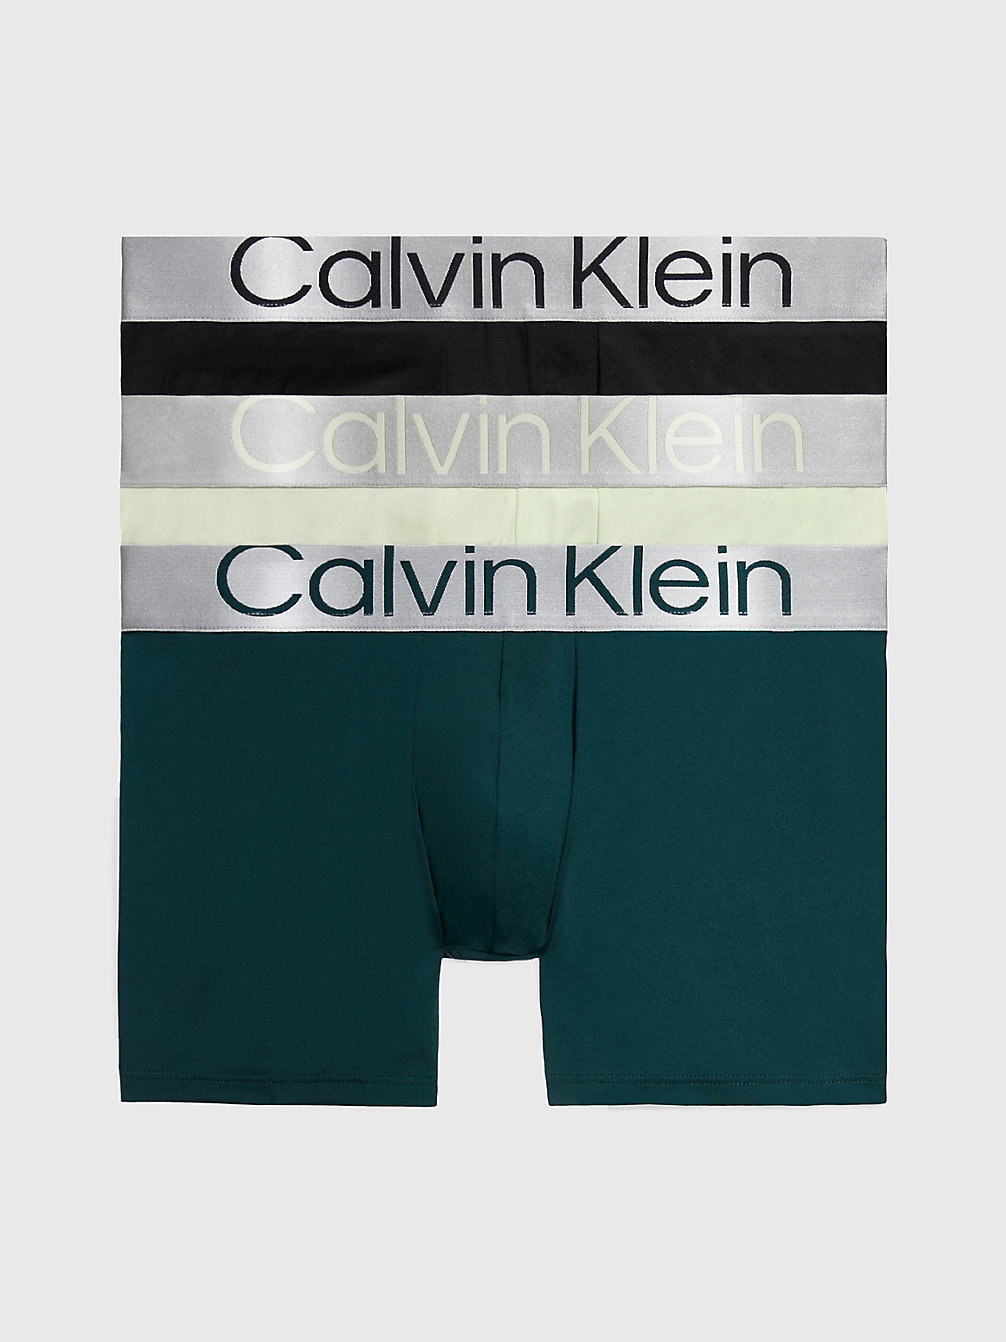 BLACK, PONDEROSA PINE, SPRING ONION 3er-Pack Slips - Steel Micro undefined Herren Calvin Klein